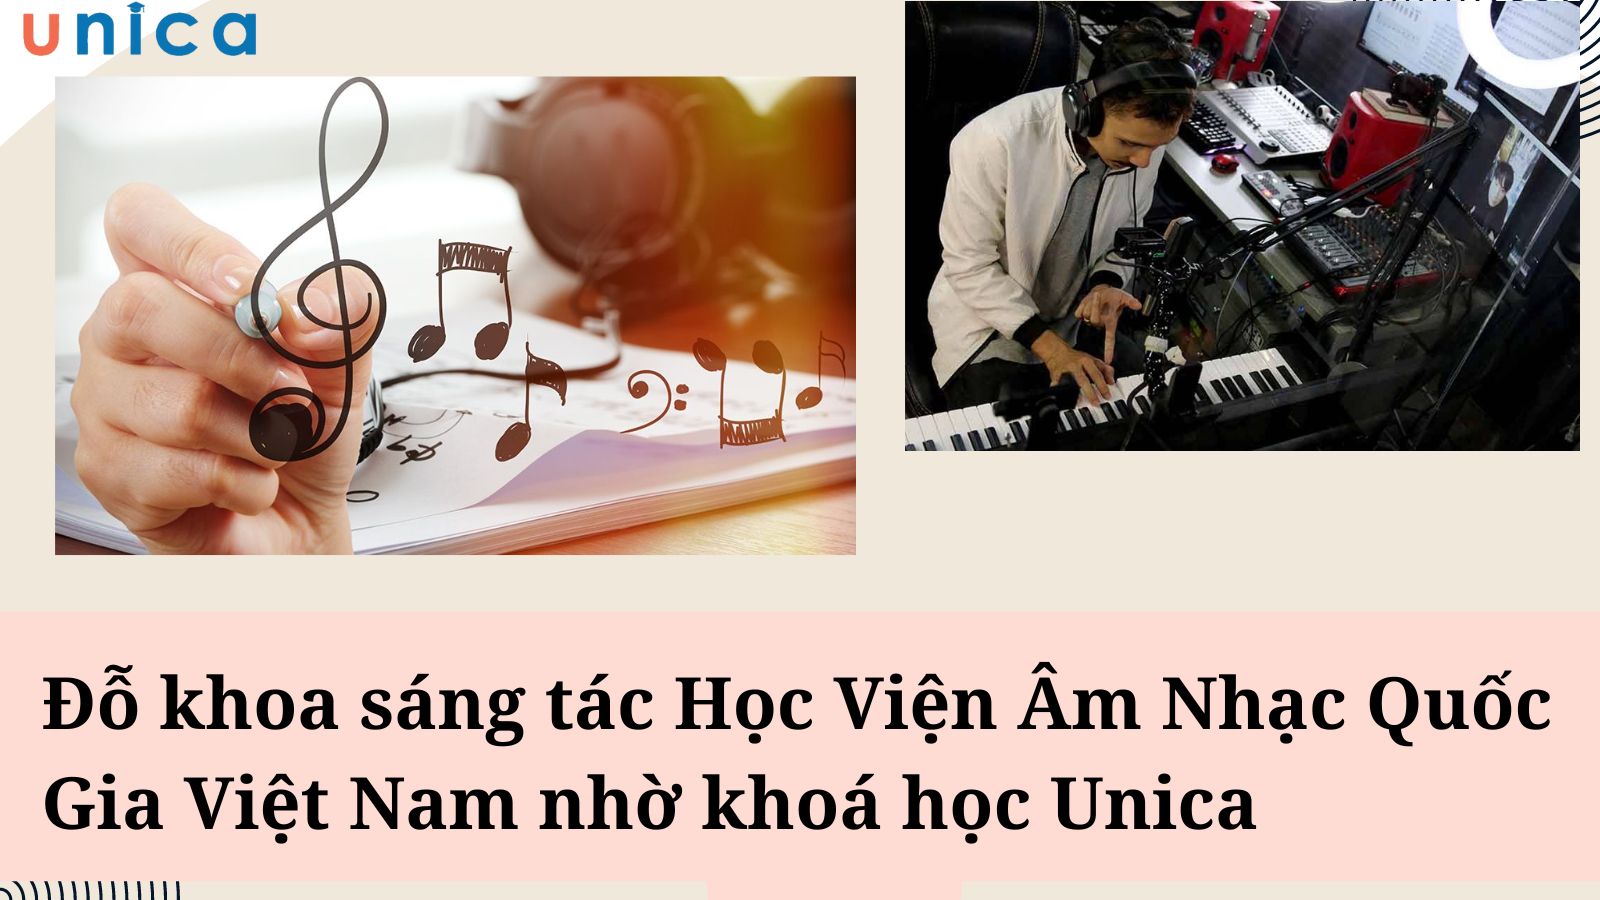 Đỗ khoa sáng tác Học Viện Âm Nhạc Quốc Gia Việt Nam nhờ khoá học Unica